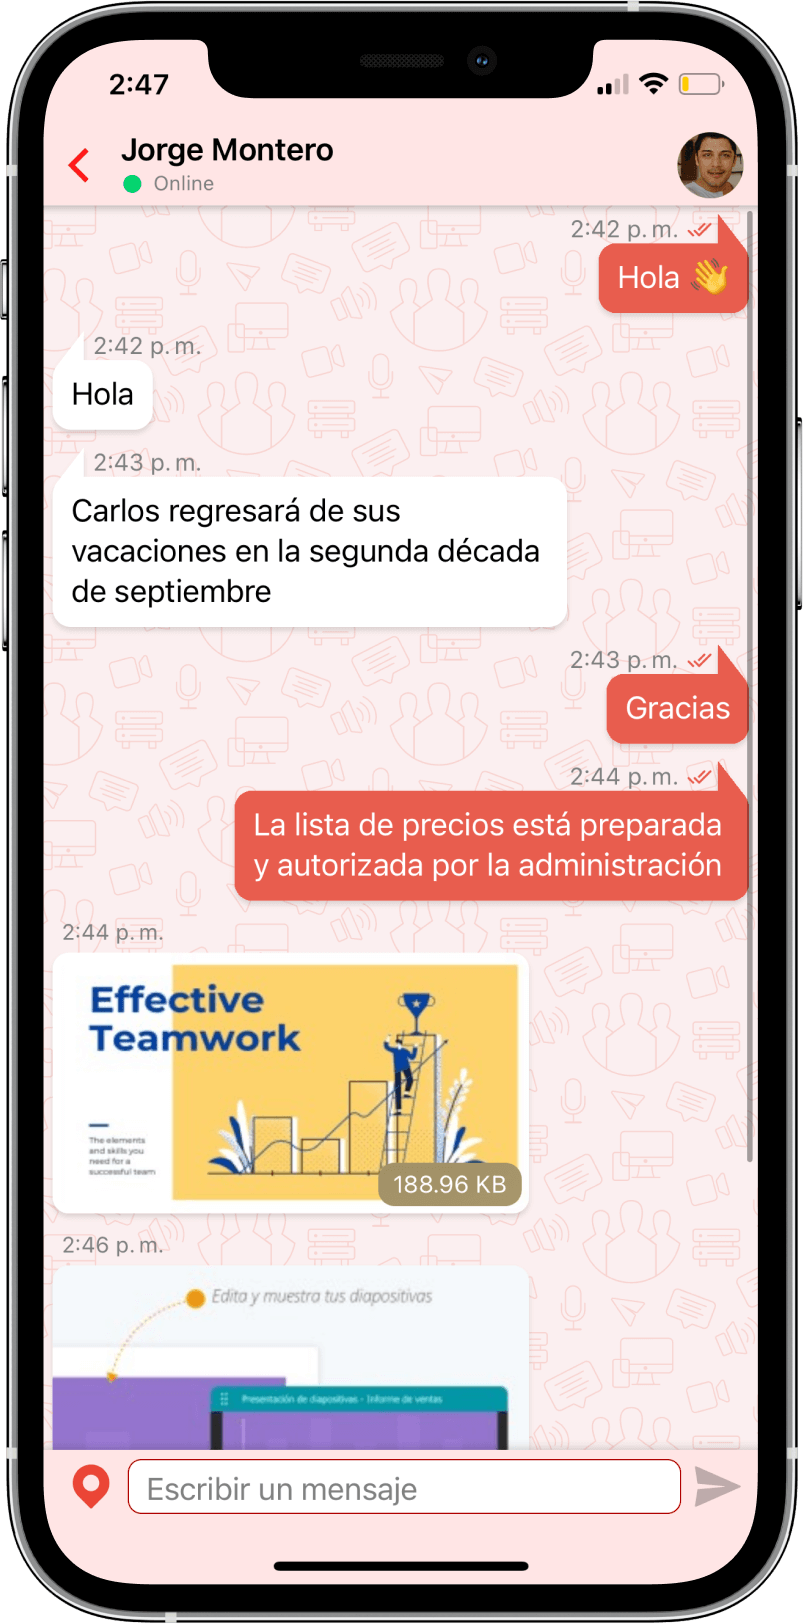 TrueConf 3.3 para iOS: nueva interfaz de usuario, modo de reunión inteligente, acceso sin conexión a chats, contactos e historial de llamadas 12